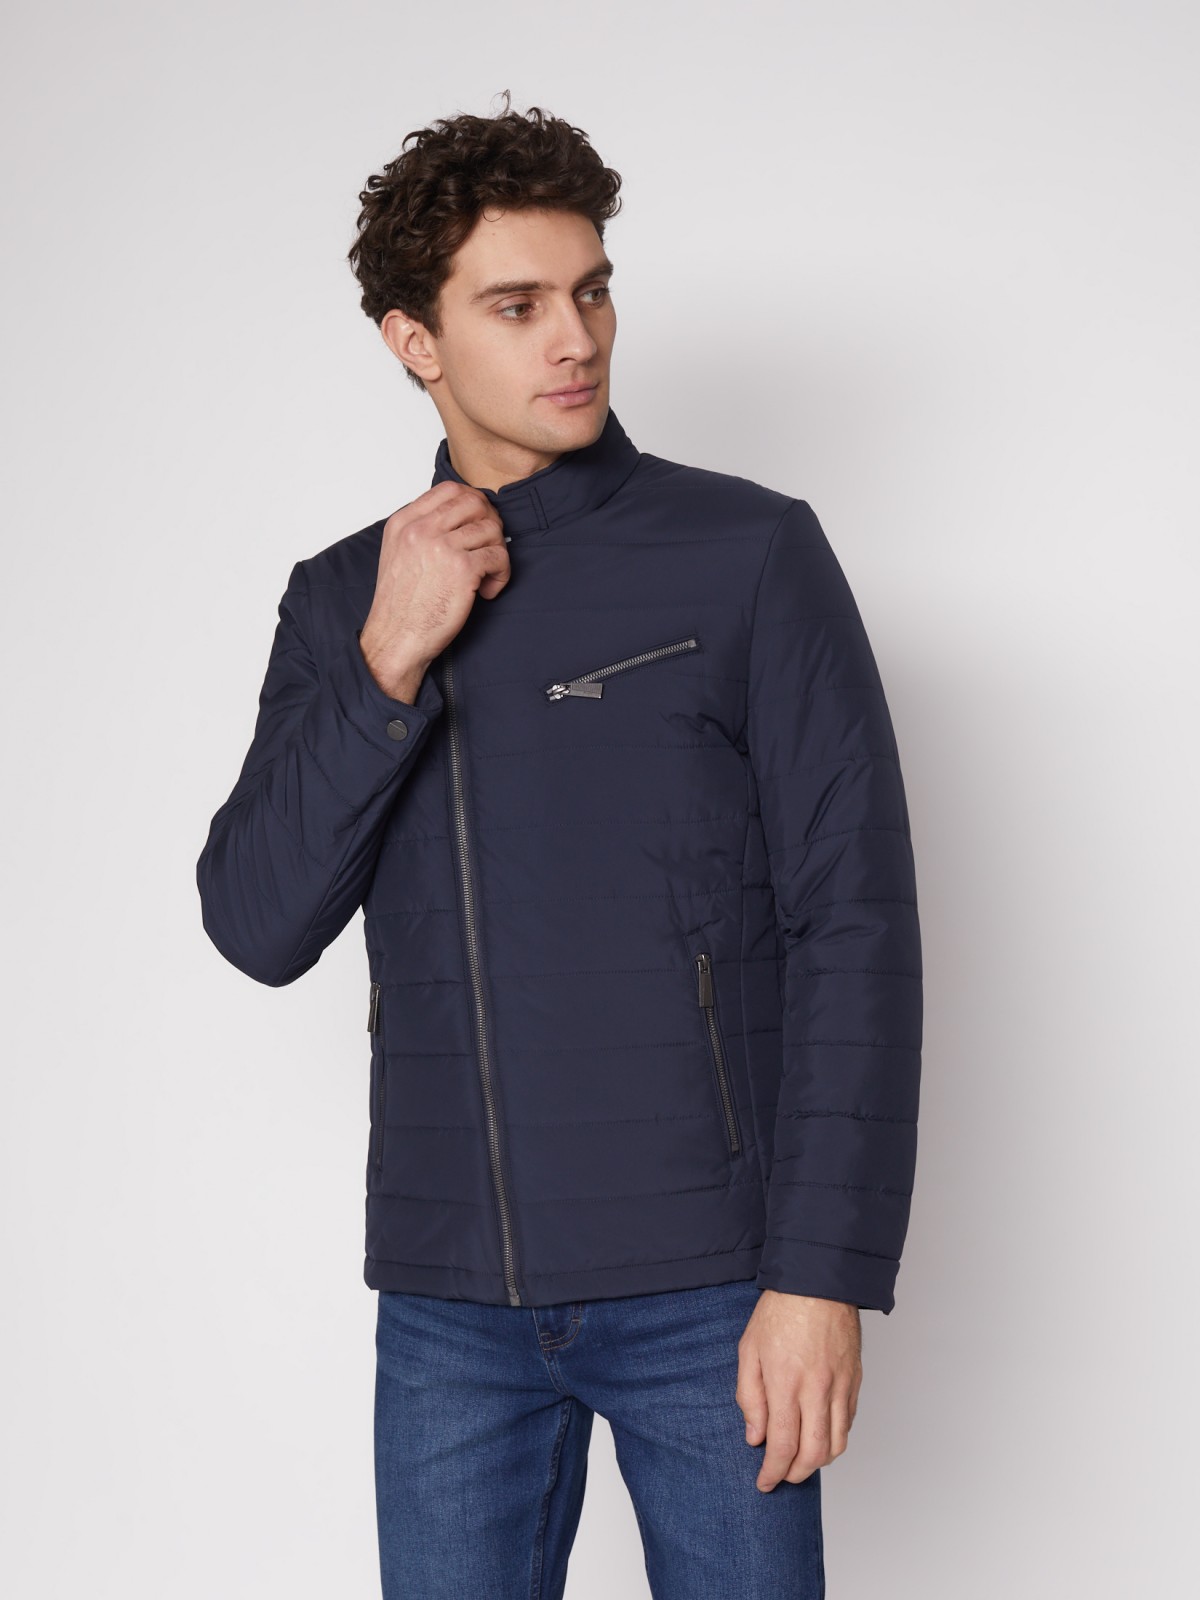 Куртка-косуха с воротником-стойкой zolla 012135139134, цвет синий, размер M - фото 4